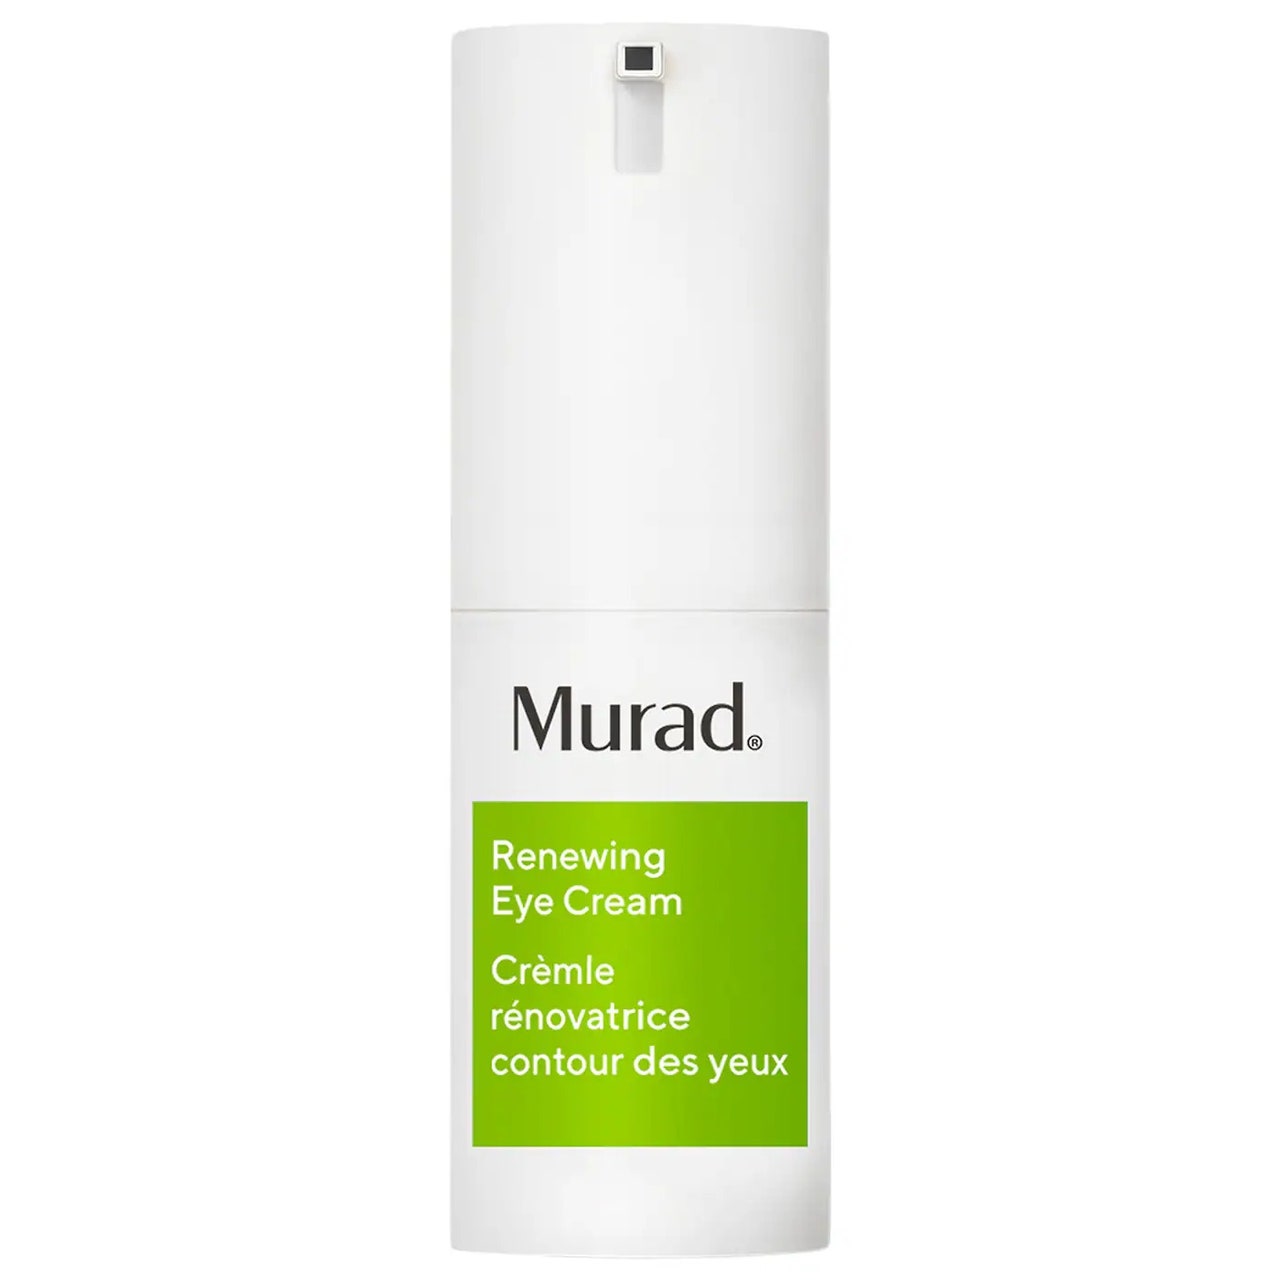 Murad Renewing Eye Cream weiße Flasche mit hellgrünem Etikett auf weißem Hintergrund